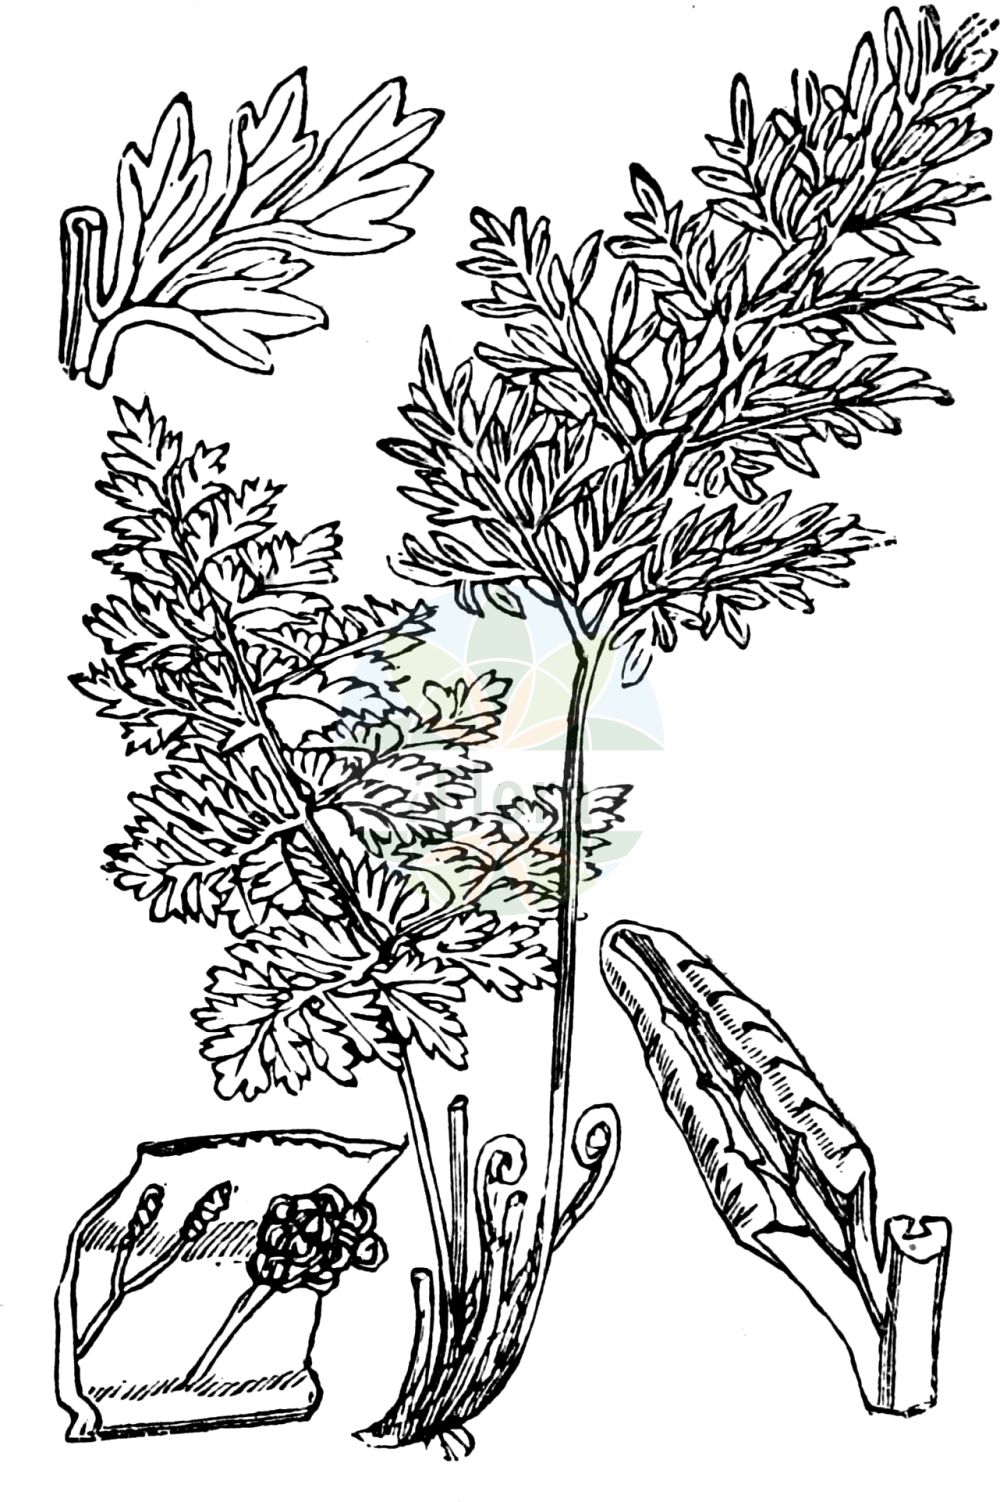 Historische Abbildung von Cryptogramma crispa (Krauser Rollfarn - Parsley Fern). Das Bild zeigt Blatt, Bluete, Frucht und Same. ---- Historical Drawing of Cryptogramma crispa (Krauser Rollfarn - Parsley Fern). The image is showing leaf, flower, fruit and seed.(Cryptogramma crispa,Krauser Rollfarn,Parsley Fern,Allosorus crispus,Cryptogramma crispa,Osmunda crispa,Krauser Rollfarn,Parsley Fern,Cryptogramma,Rollfarn,Parsley Ferns,Pteridaceae,Saumfarngewächse,Brake-fern family,Blatt,Bluete,Frucht,Same,leaf,flower,fruit,seed,Fitch et al. (1880))